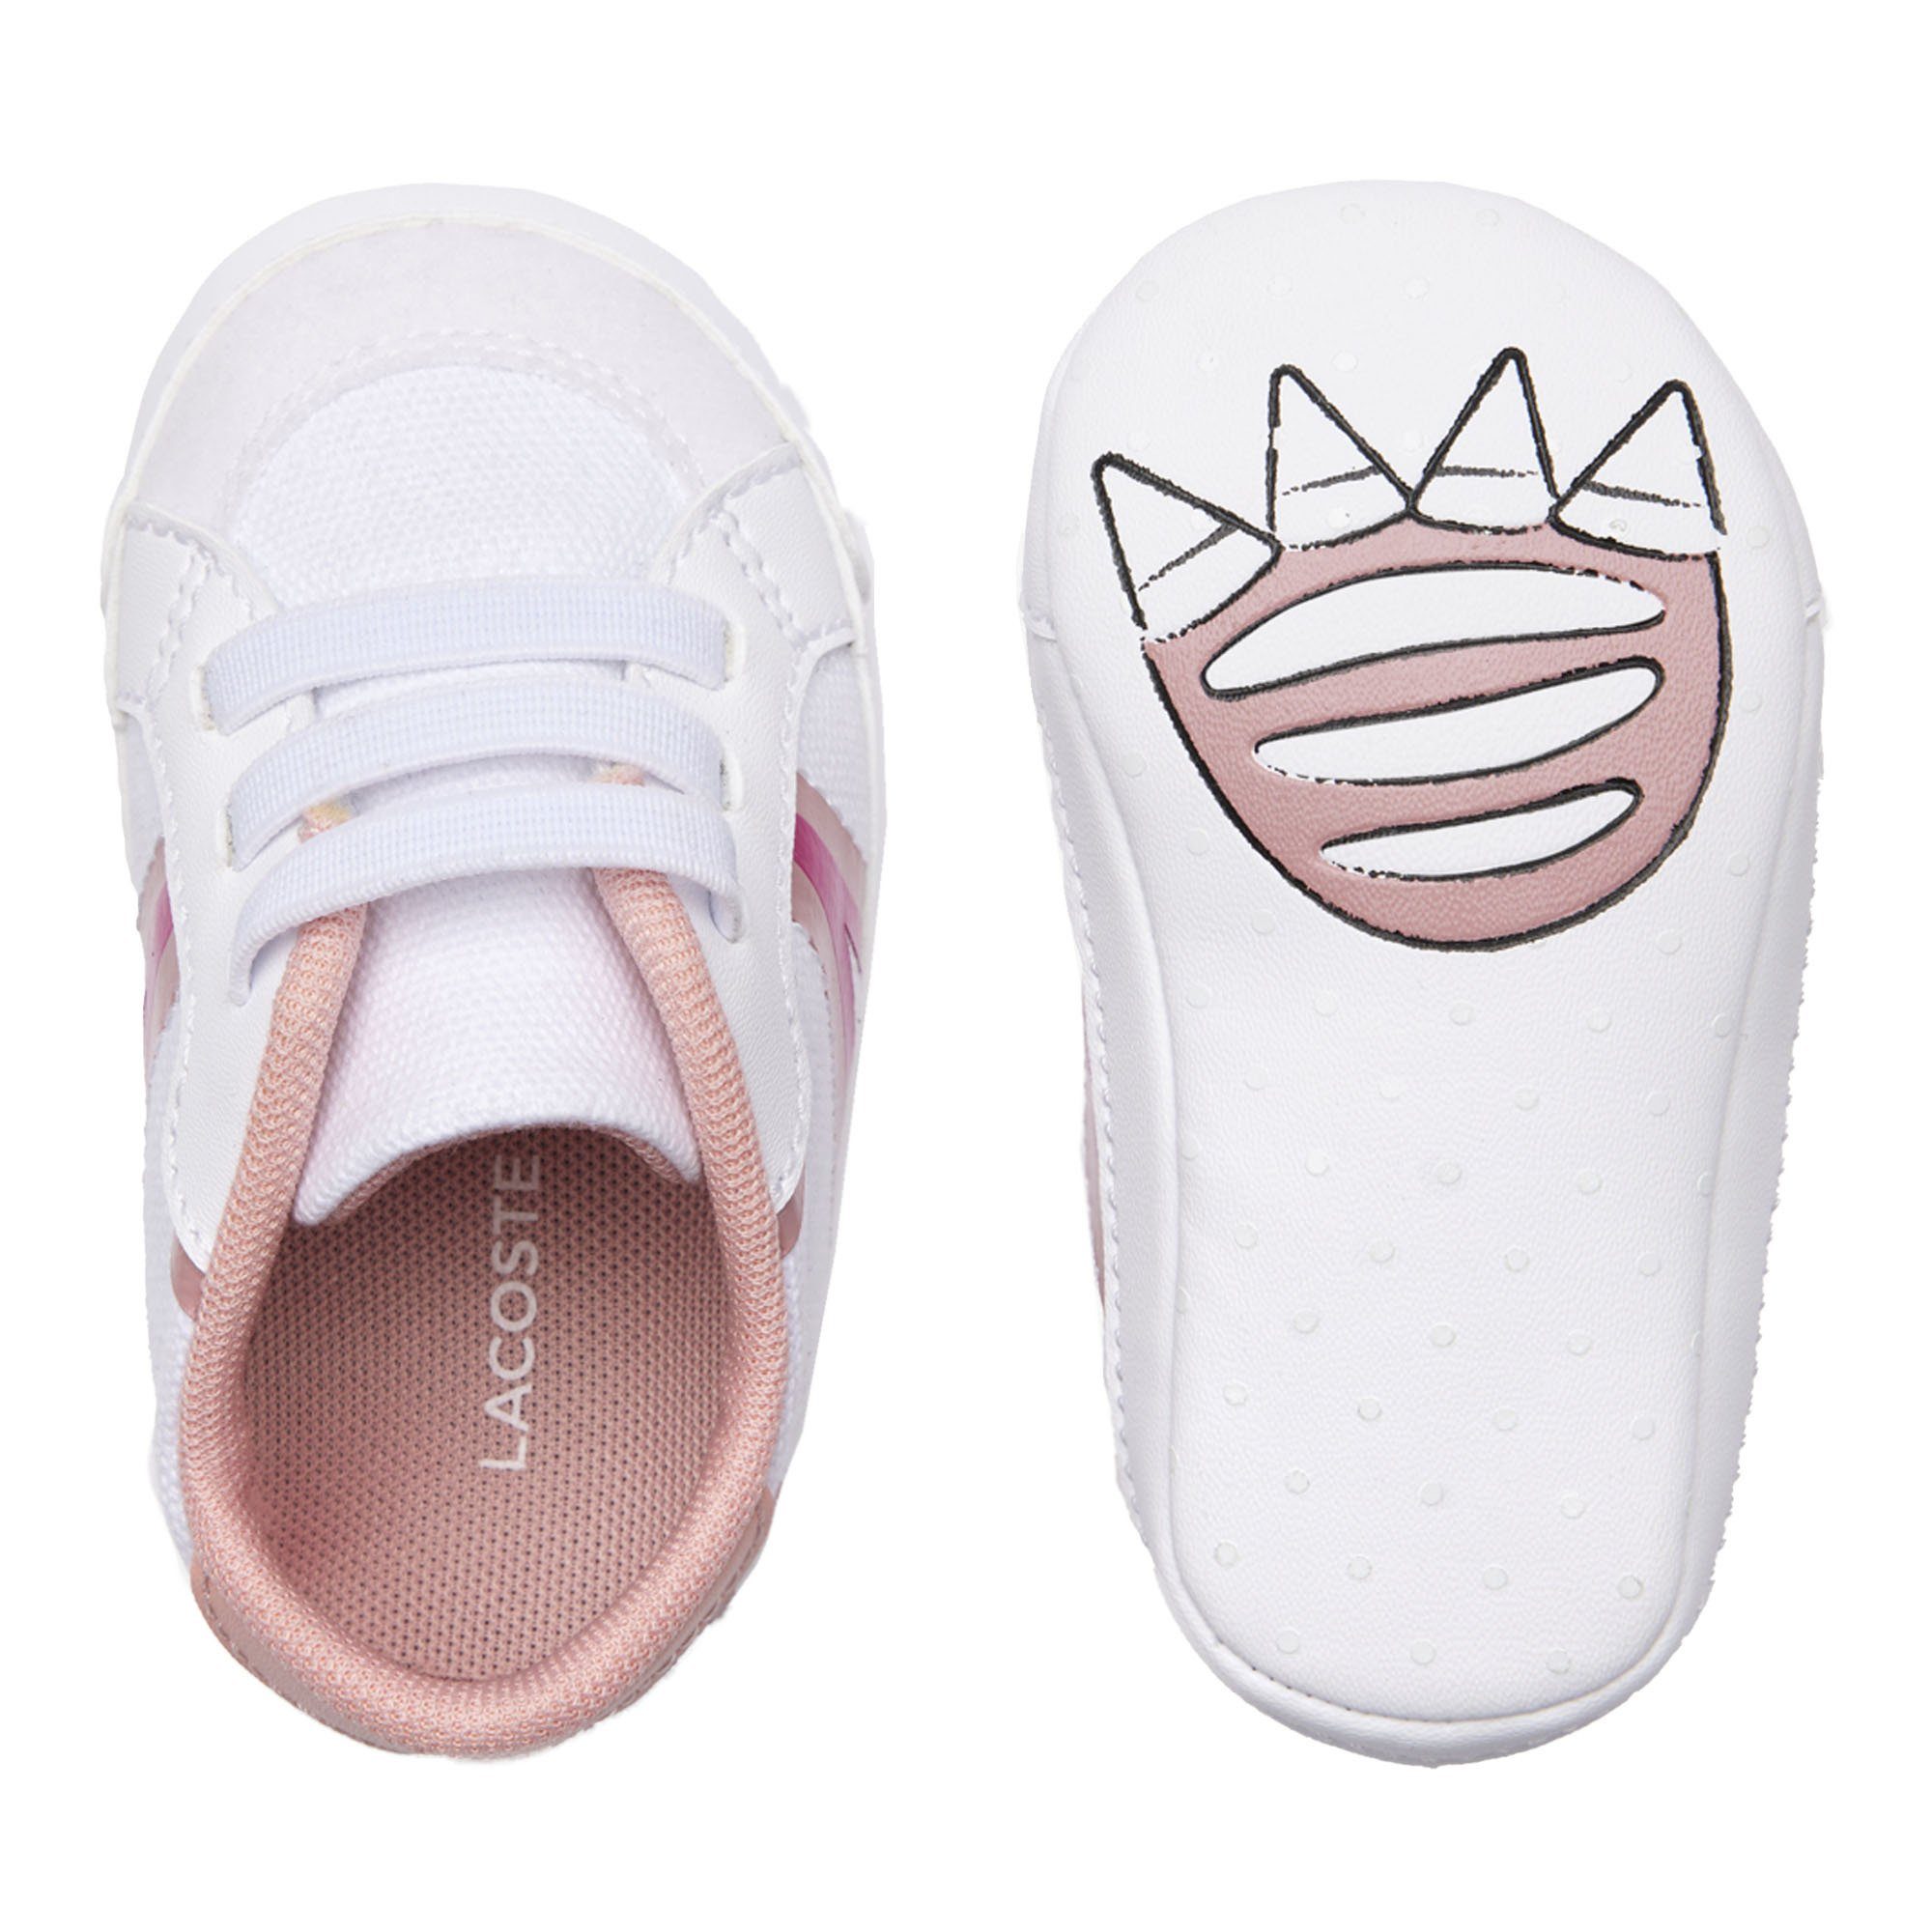 Baby Sneaker, L004 Weiß/Pink Lacoste Schuhe - Krabbelschuhe, Cub, Krabbelschuh